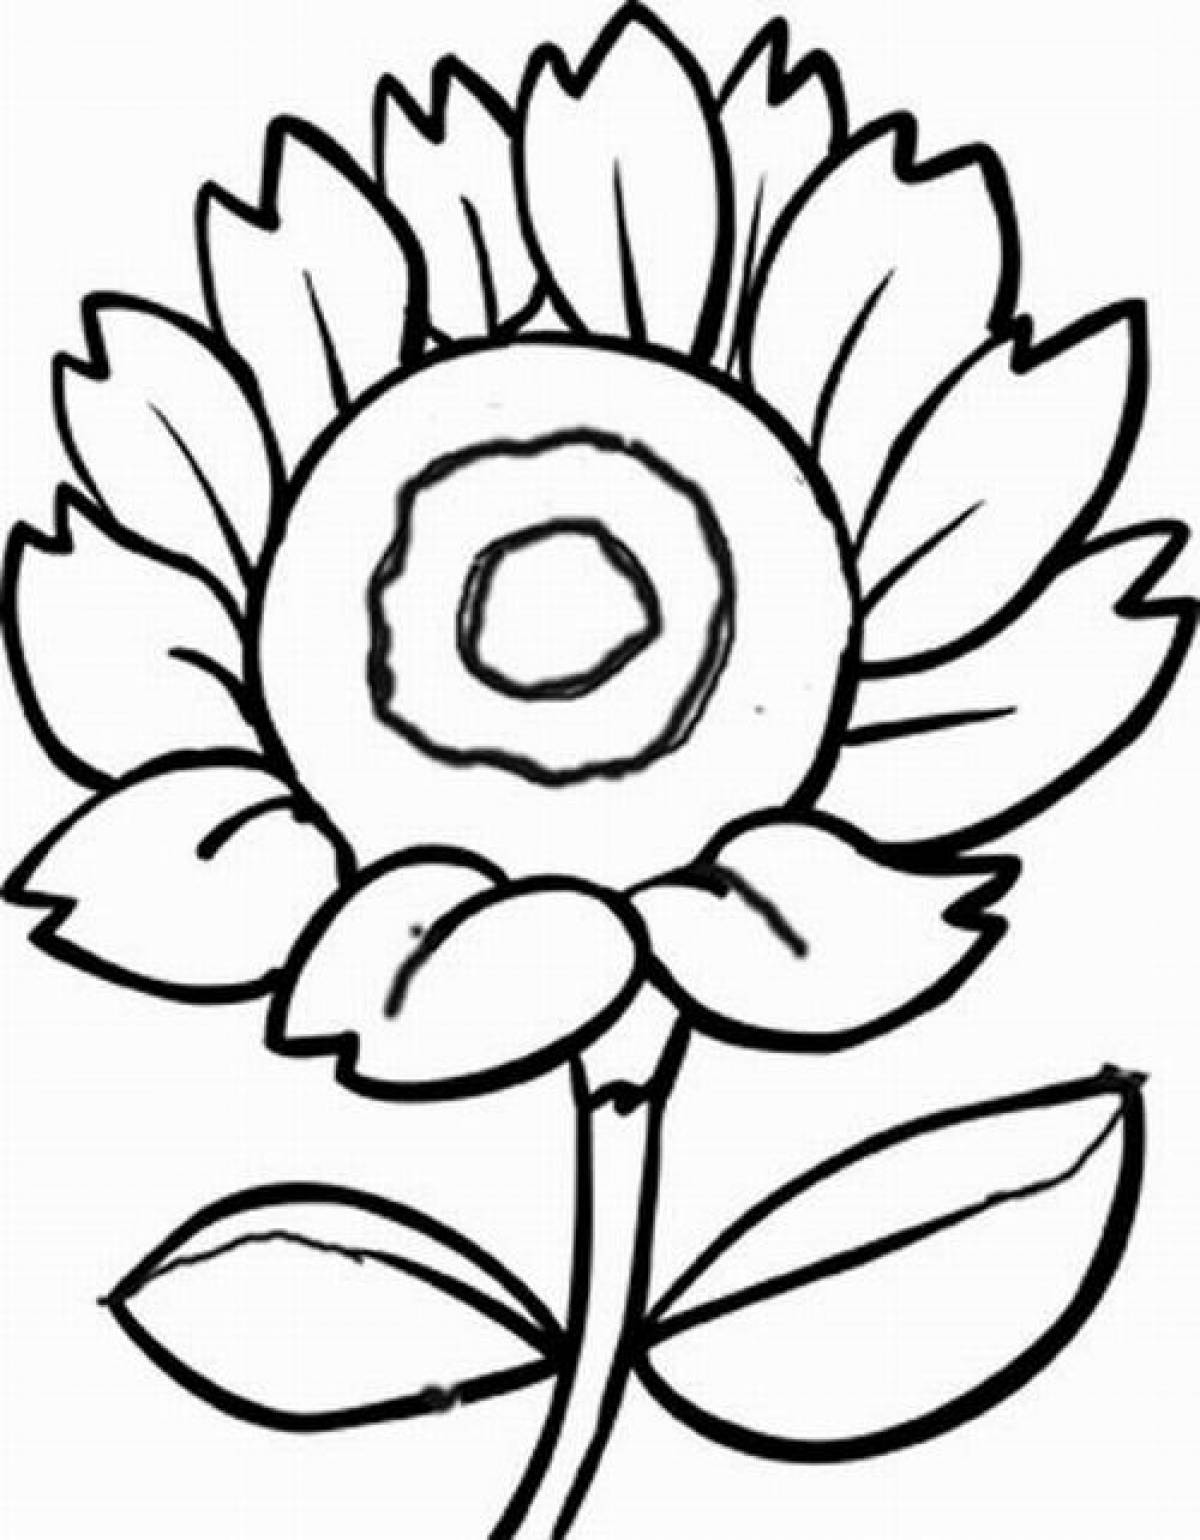 Solar flower